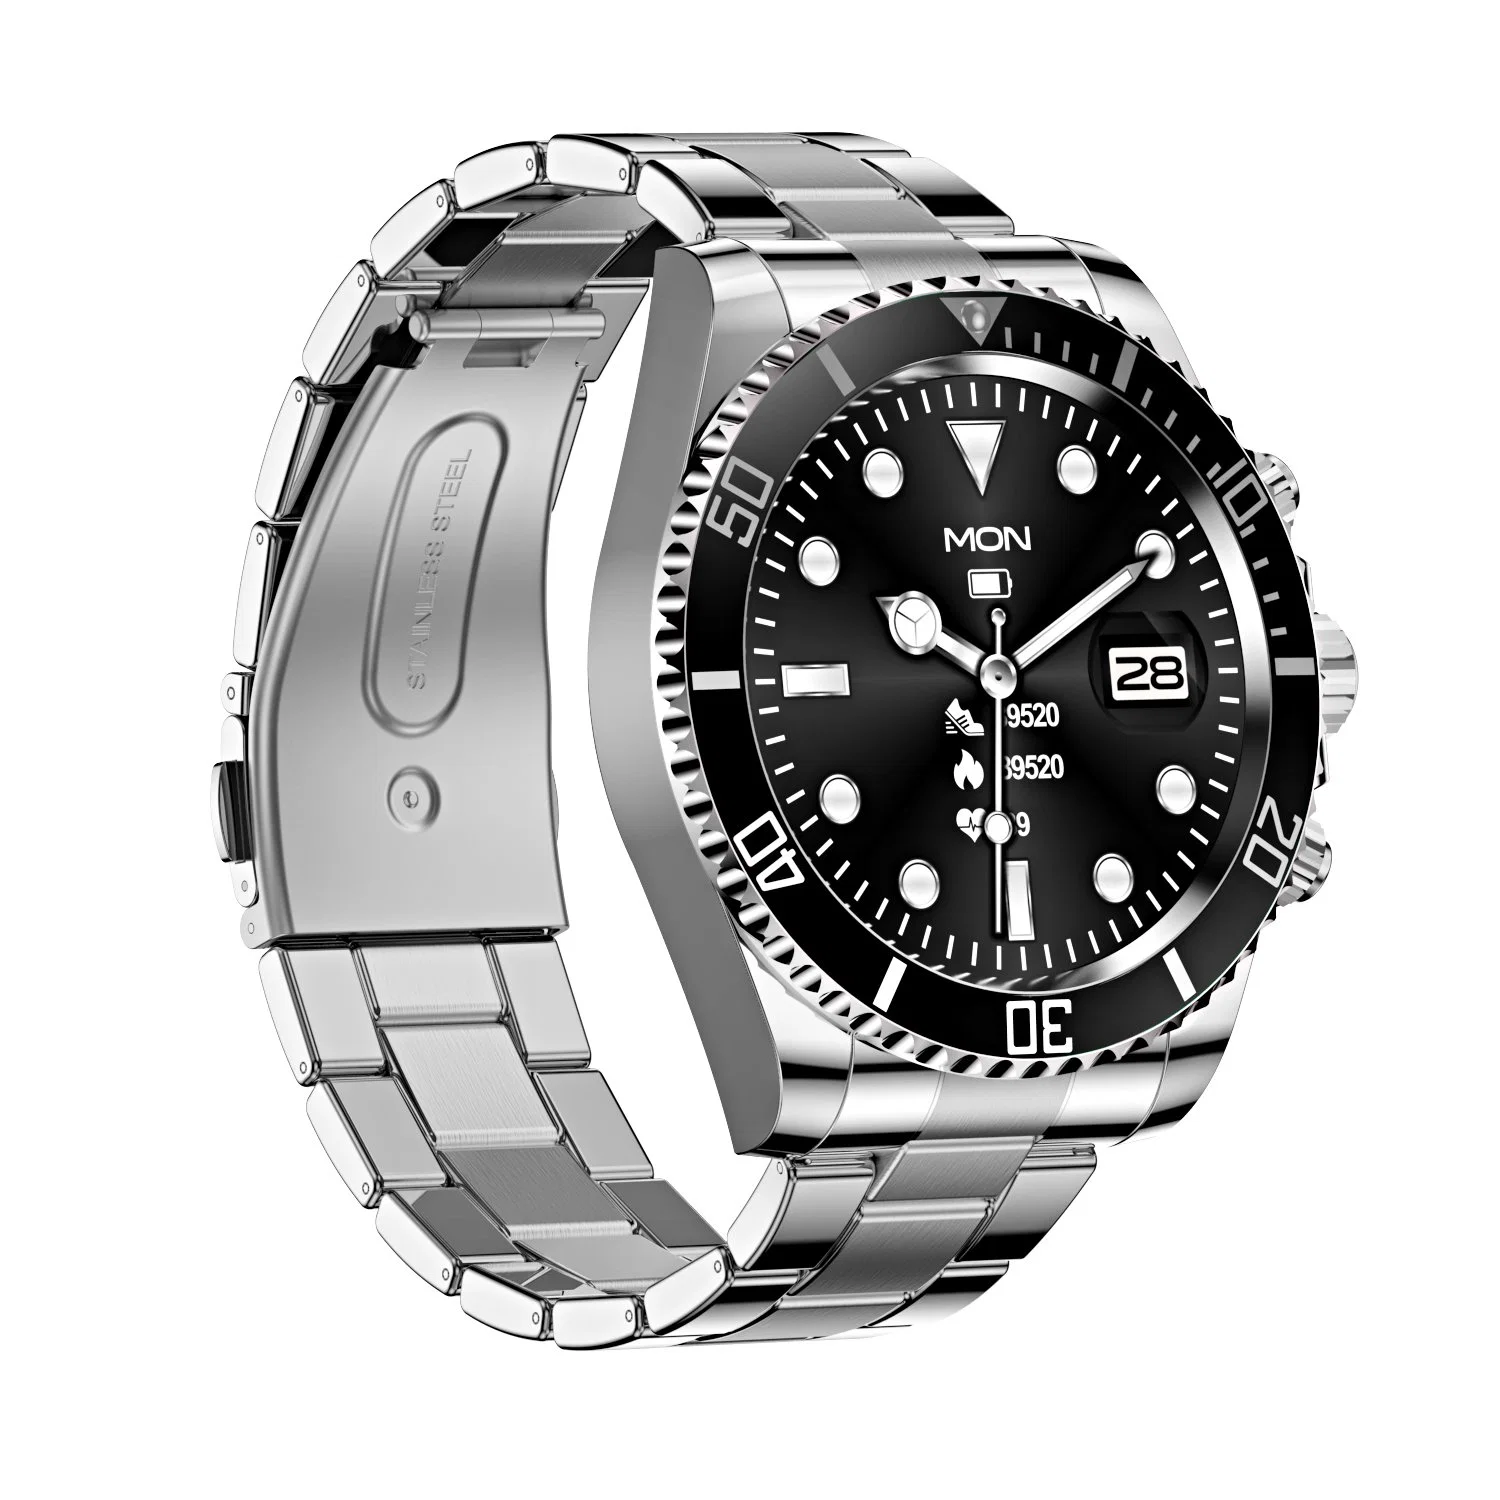 Relógios novos similares ao aço inoxidável de relógio preto do seletor do Submariner Relógio automático para homens para Aw12